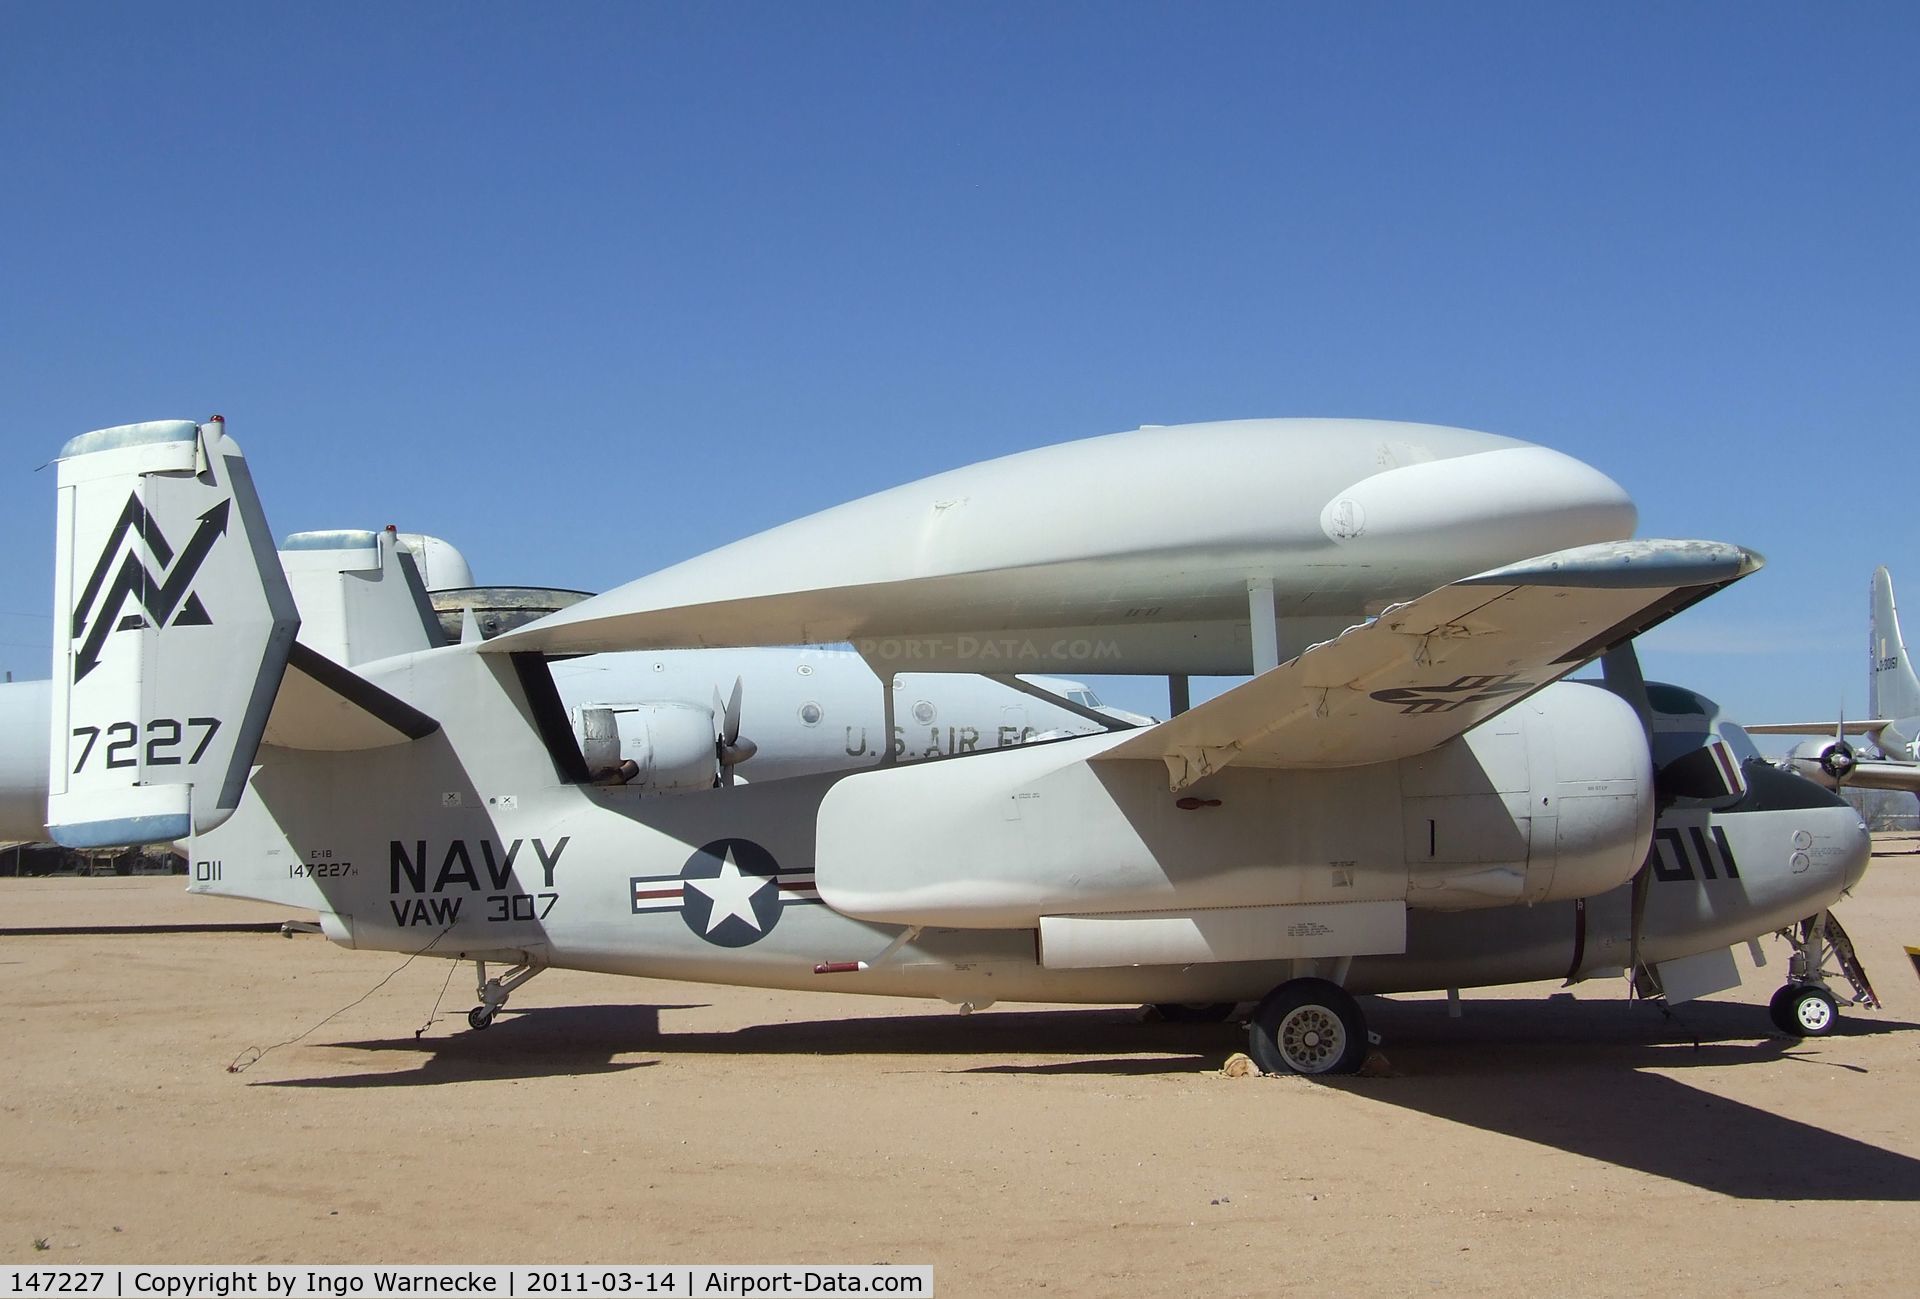 147227, Grumman E-1B Tracer (G-117) C/N 26, Grumman E-1B Tracer at the Pima Air & Space Museum, Tucson AZ